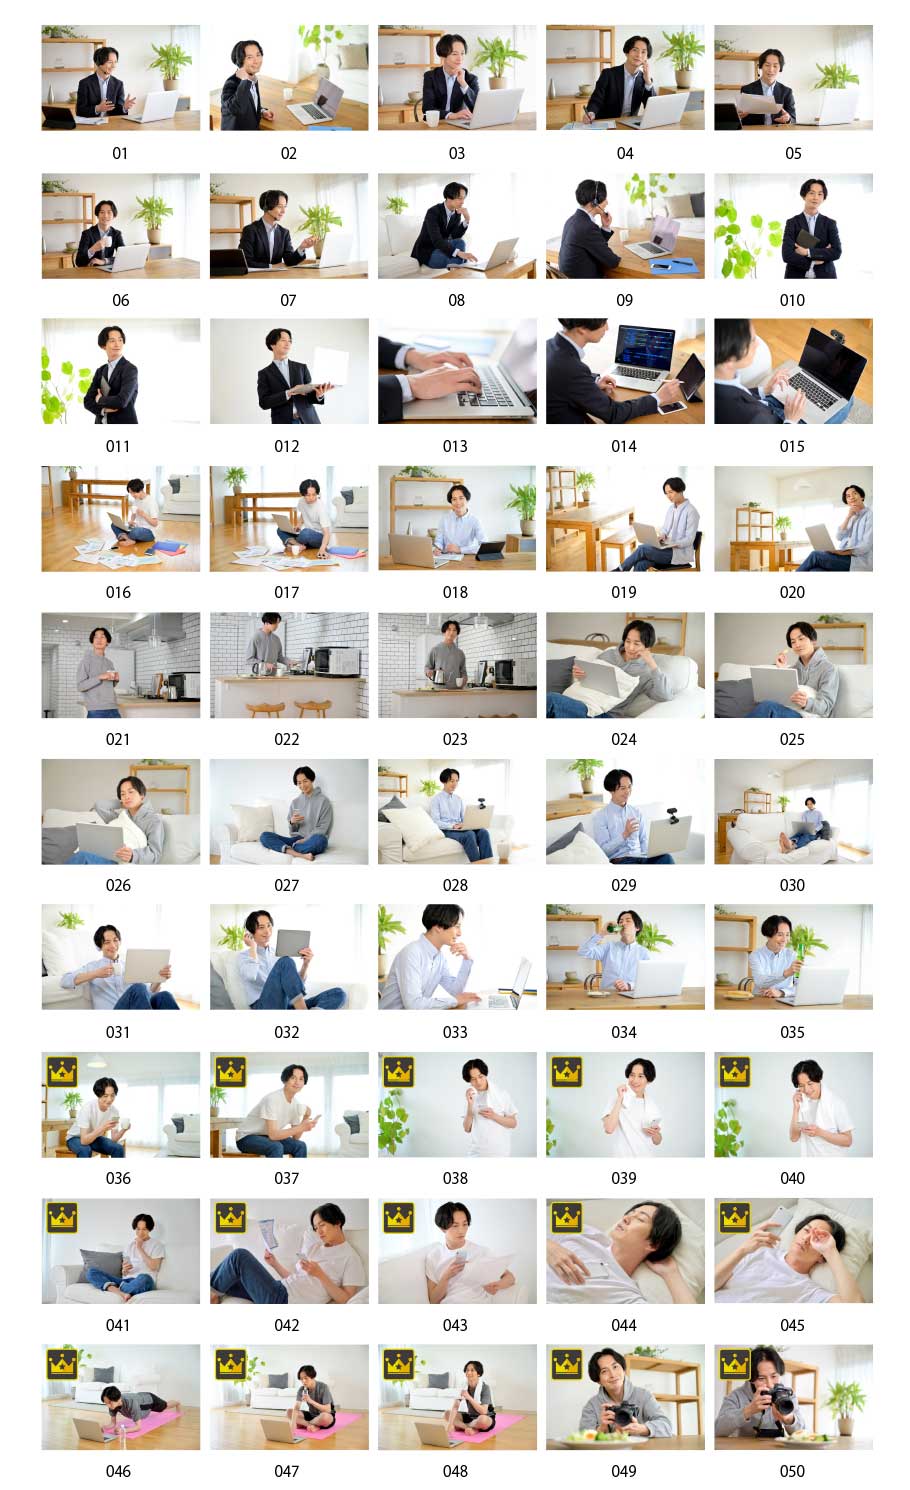 집에서 보내는 일본인 남성의 사진